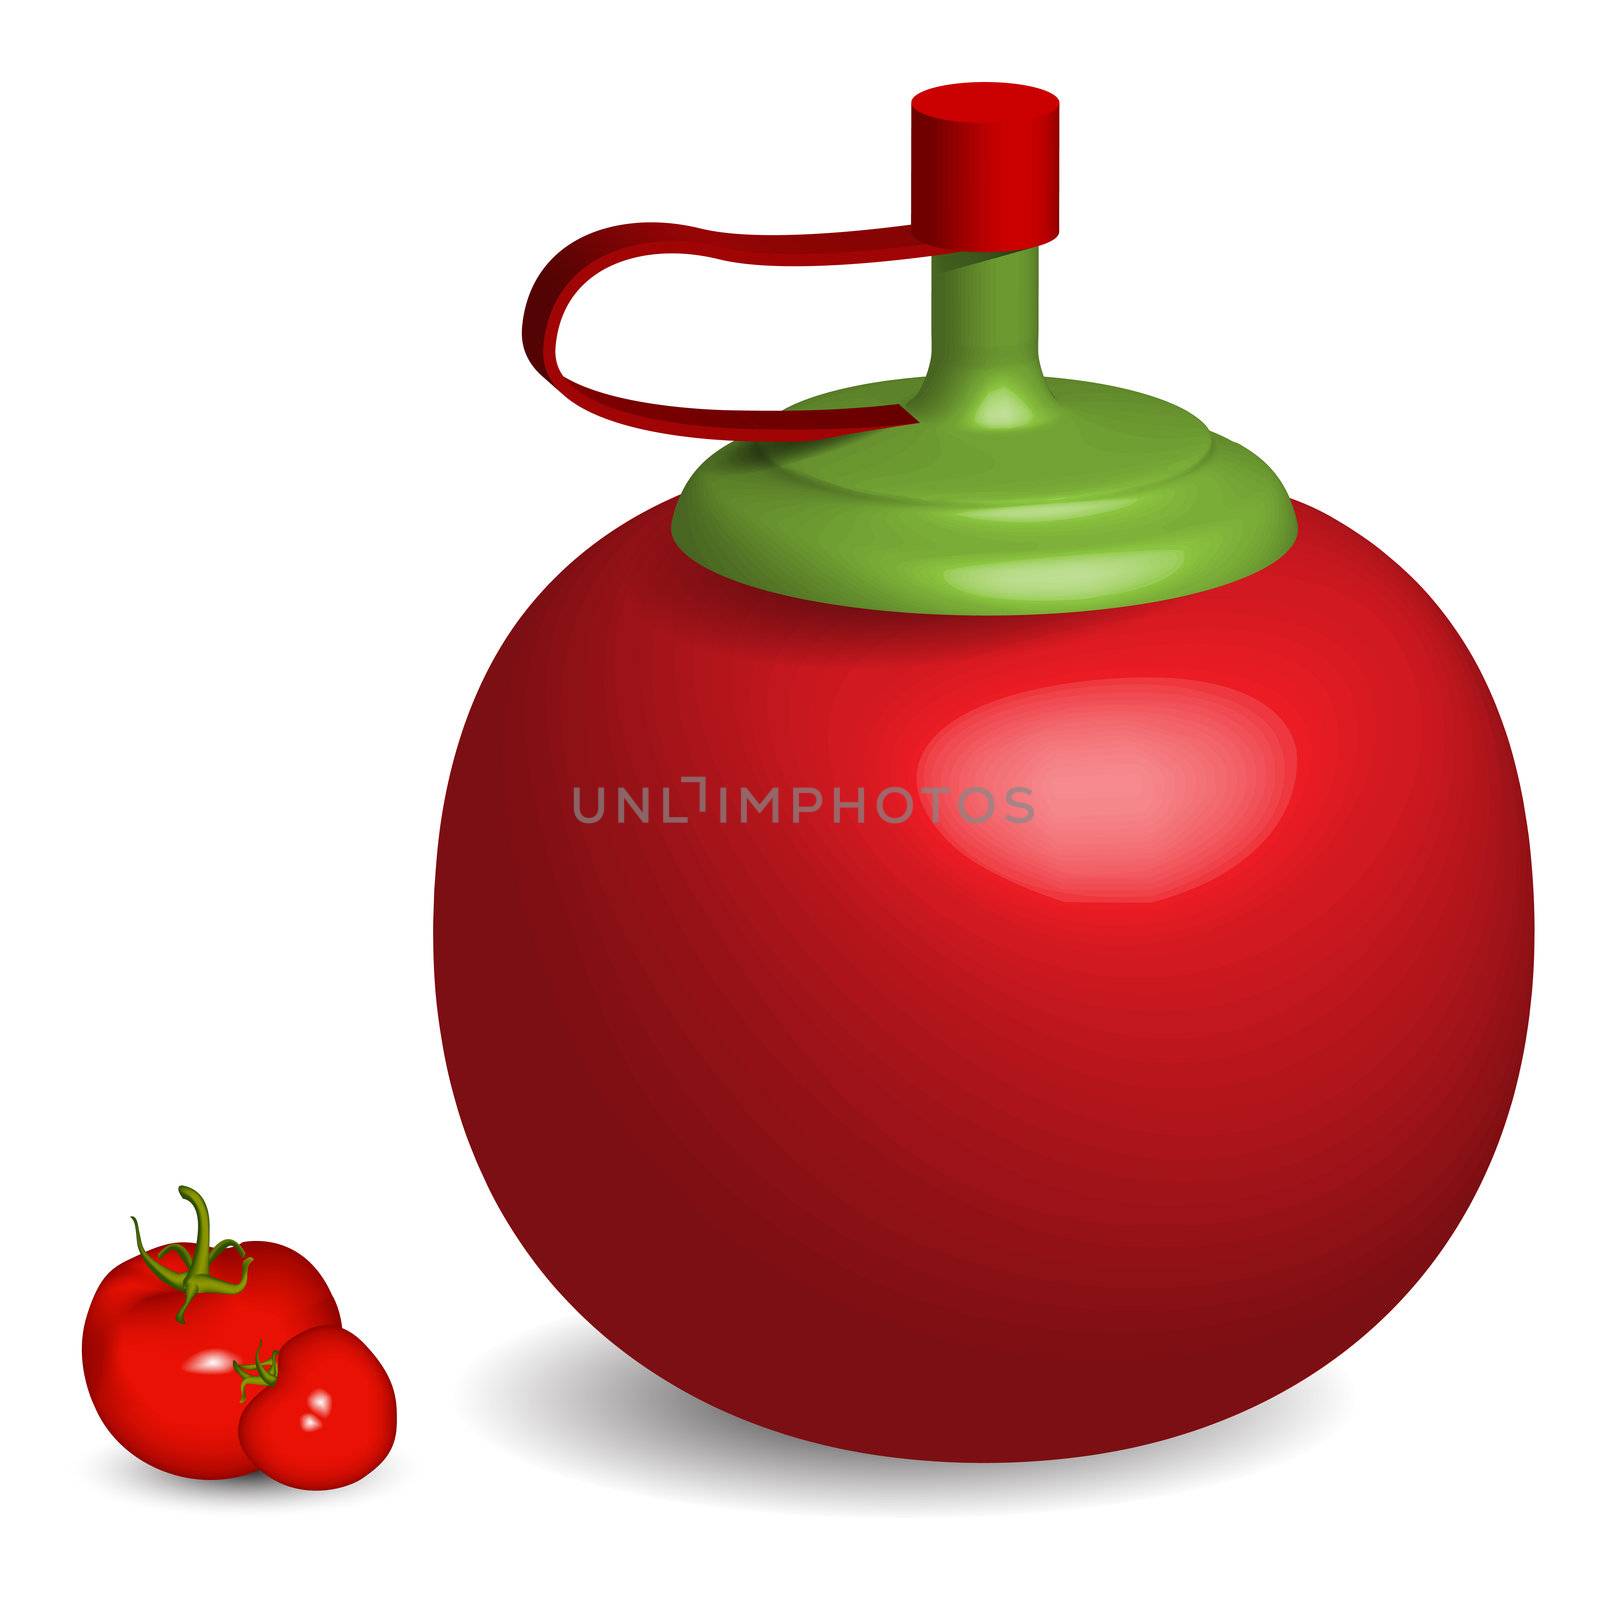 tomatto sauce bottle by robertosch